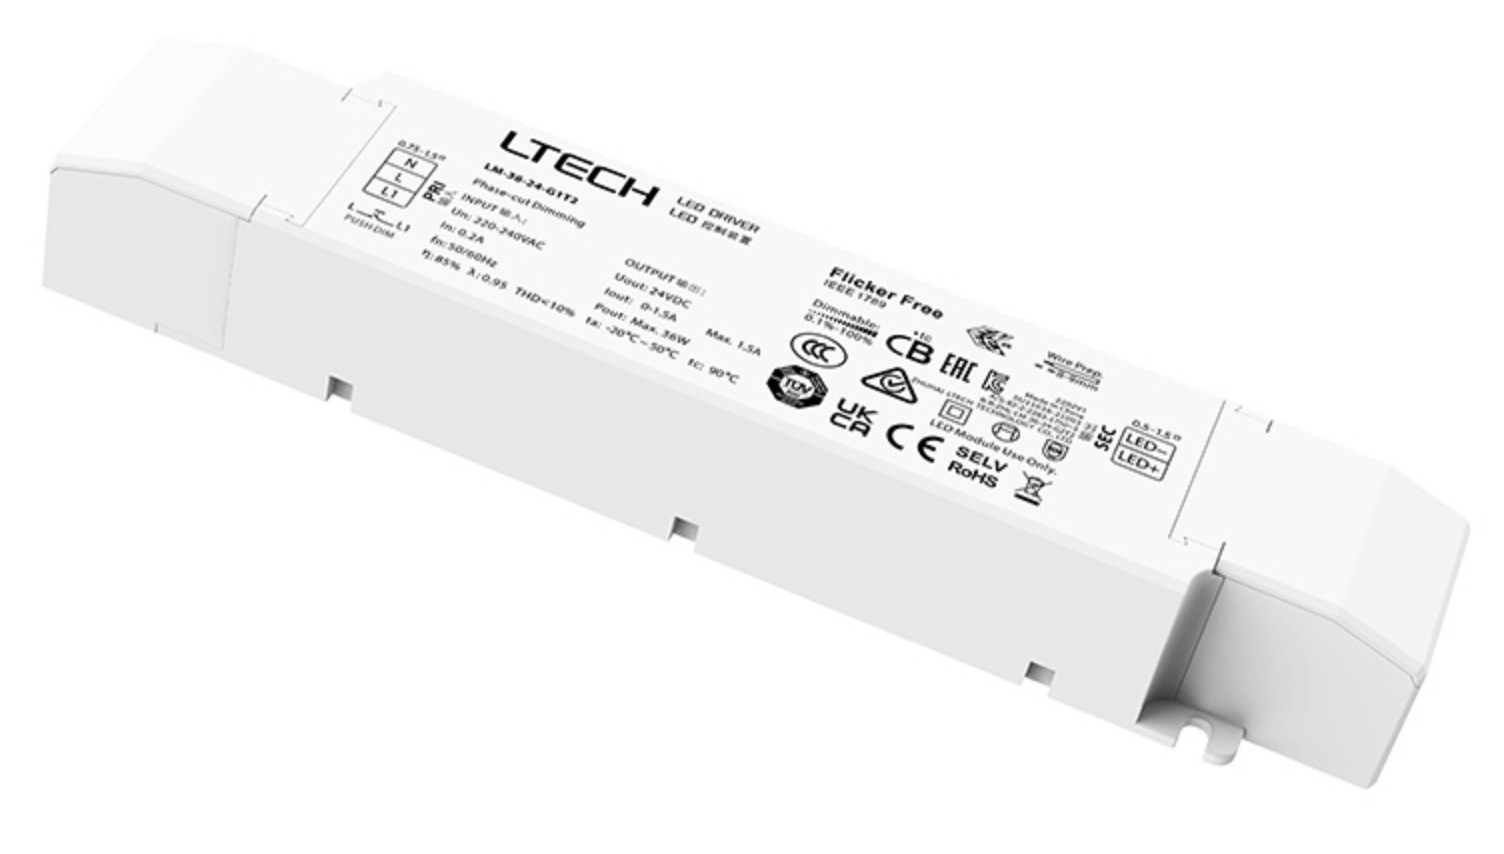 LTECH LM-36-24-G1T2 Triac ELV Push DIM Constant Voltage LED Intelligent Driver